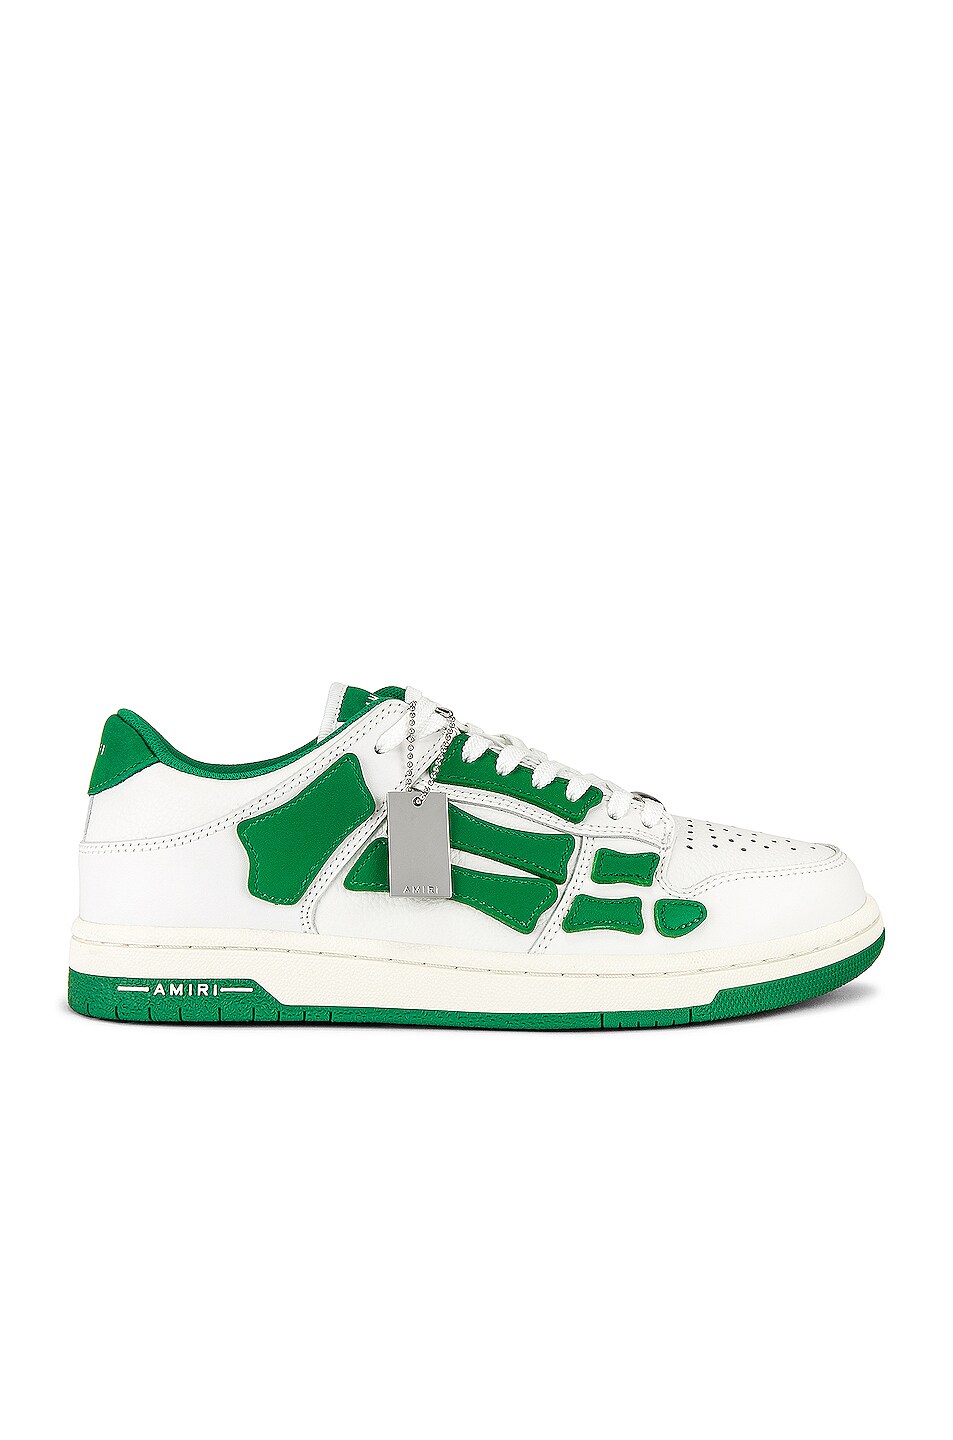 Image 1 of Amiri Skel Top Low Top Sneaker in White & Green